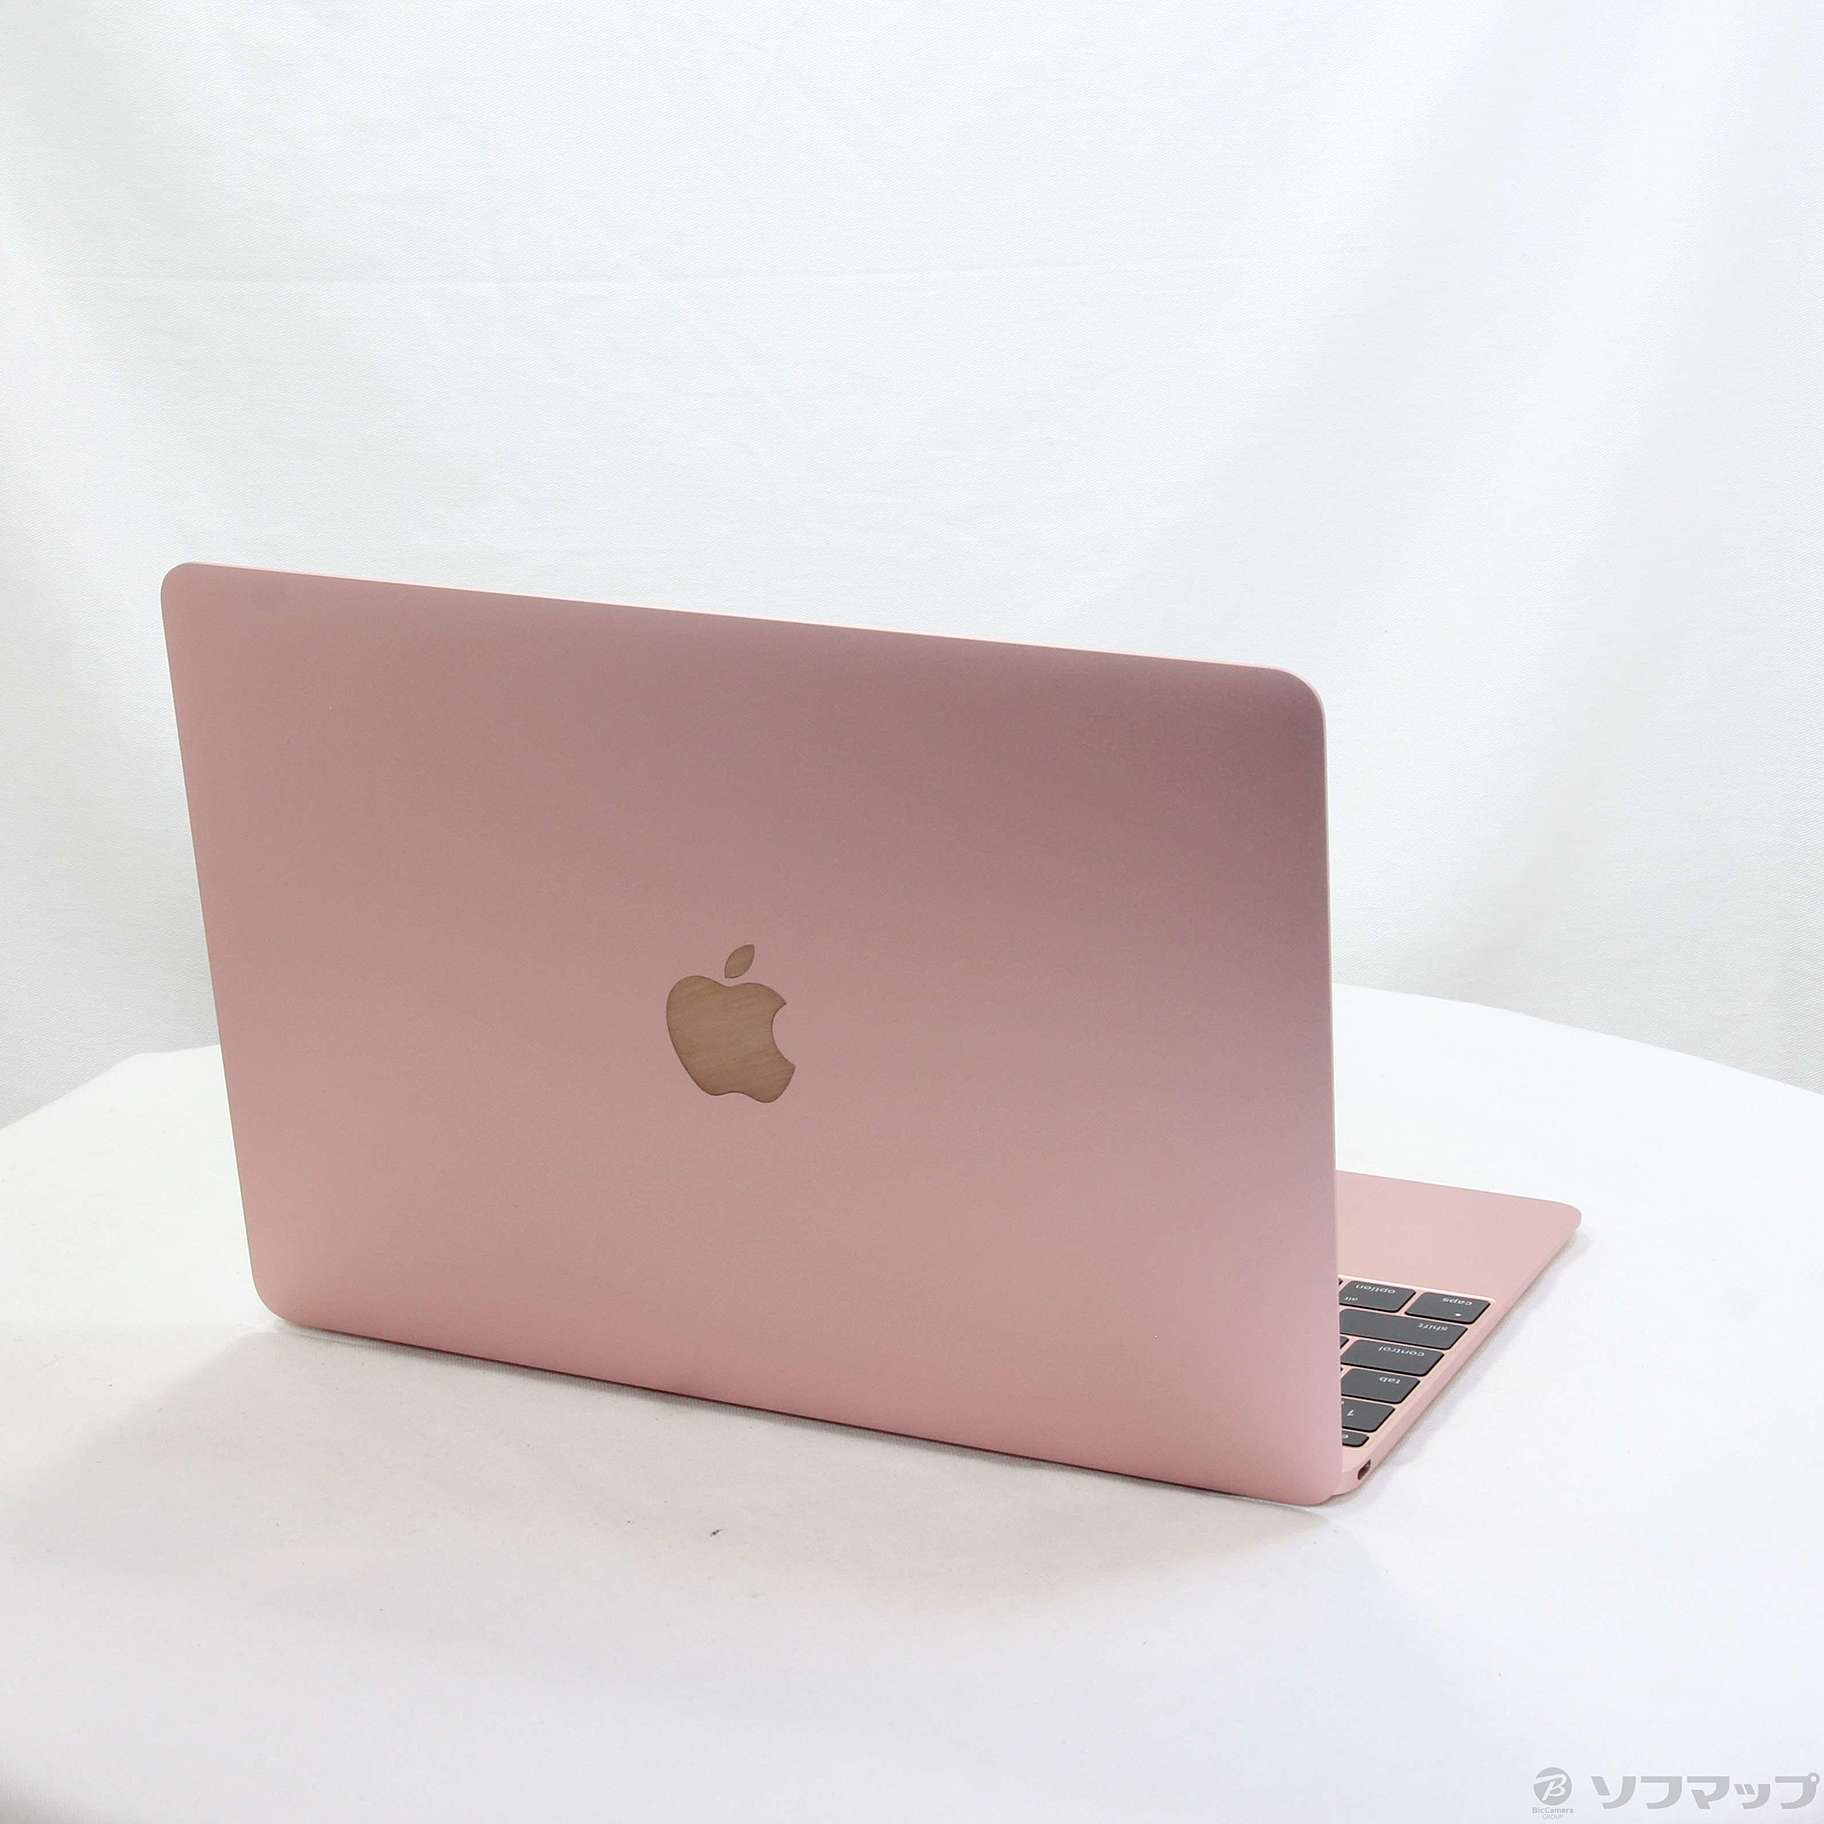 得価高評価 Apple Macbook MMGM2J/A ローズゴールドの通販 by あさり